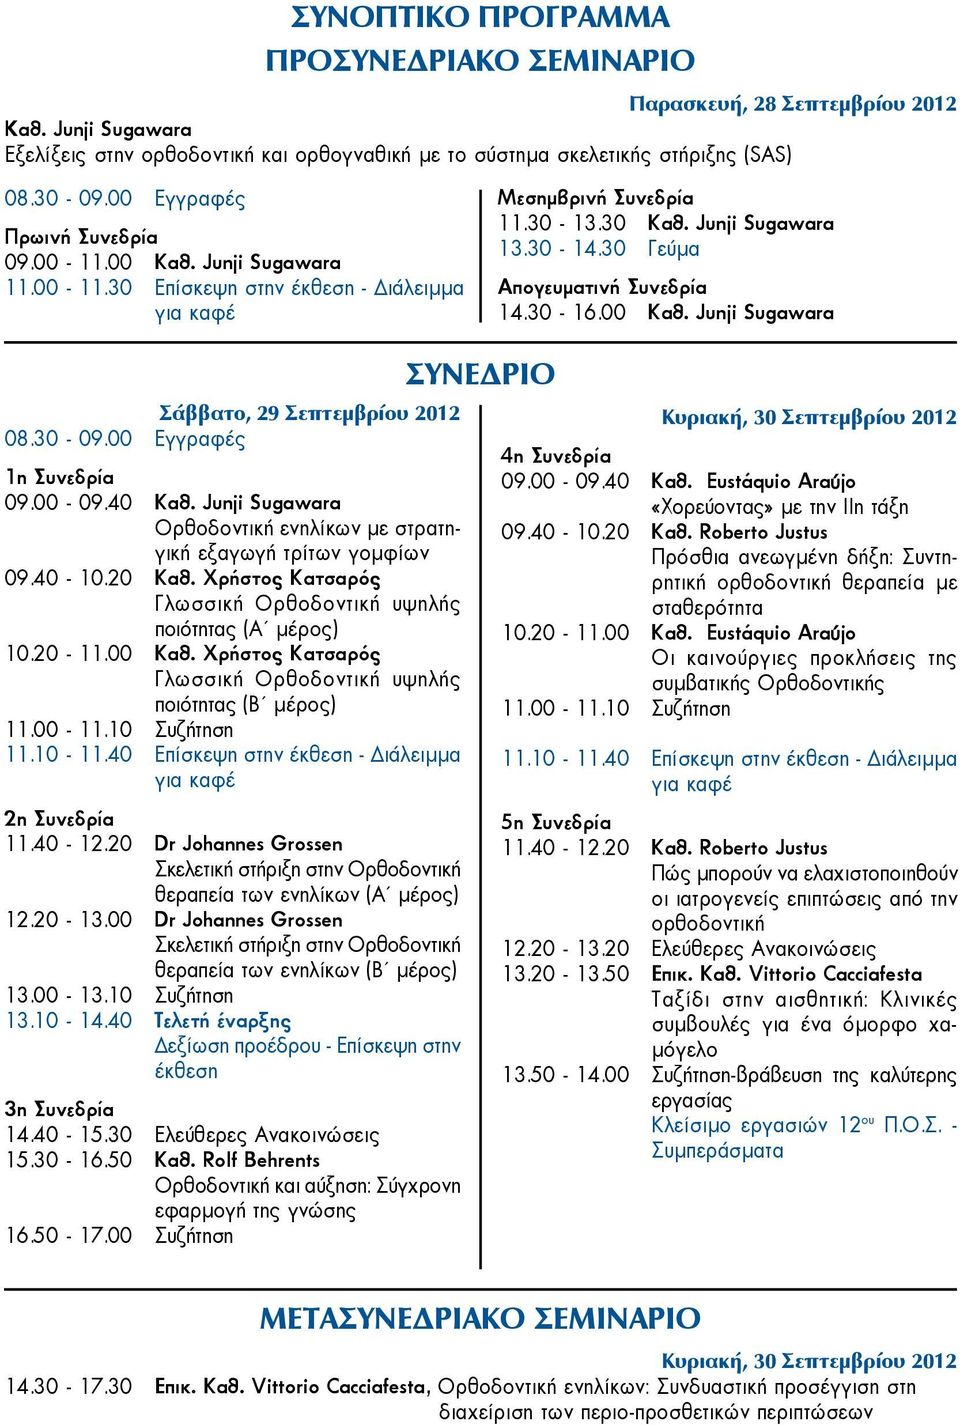 40 Επίσκεψη στην έκθεση - Διάλειμμα για καφέ 2η Συνεδρία 11.40-12.20 Dr Johannes Grossen Σκελετική στήριξη στην Ορθοδοντική θεραπεία των ενηλίκων (Α μέρος) 12.20-13.